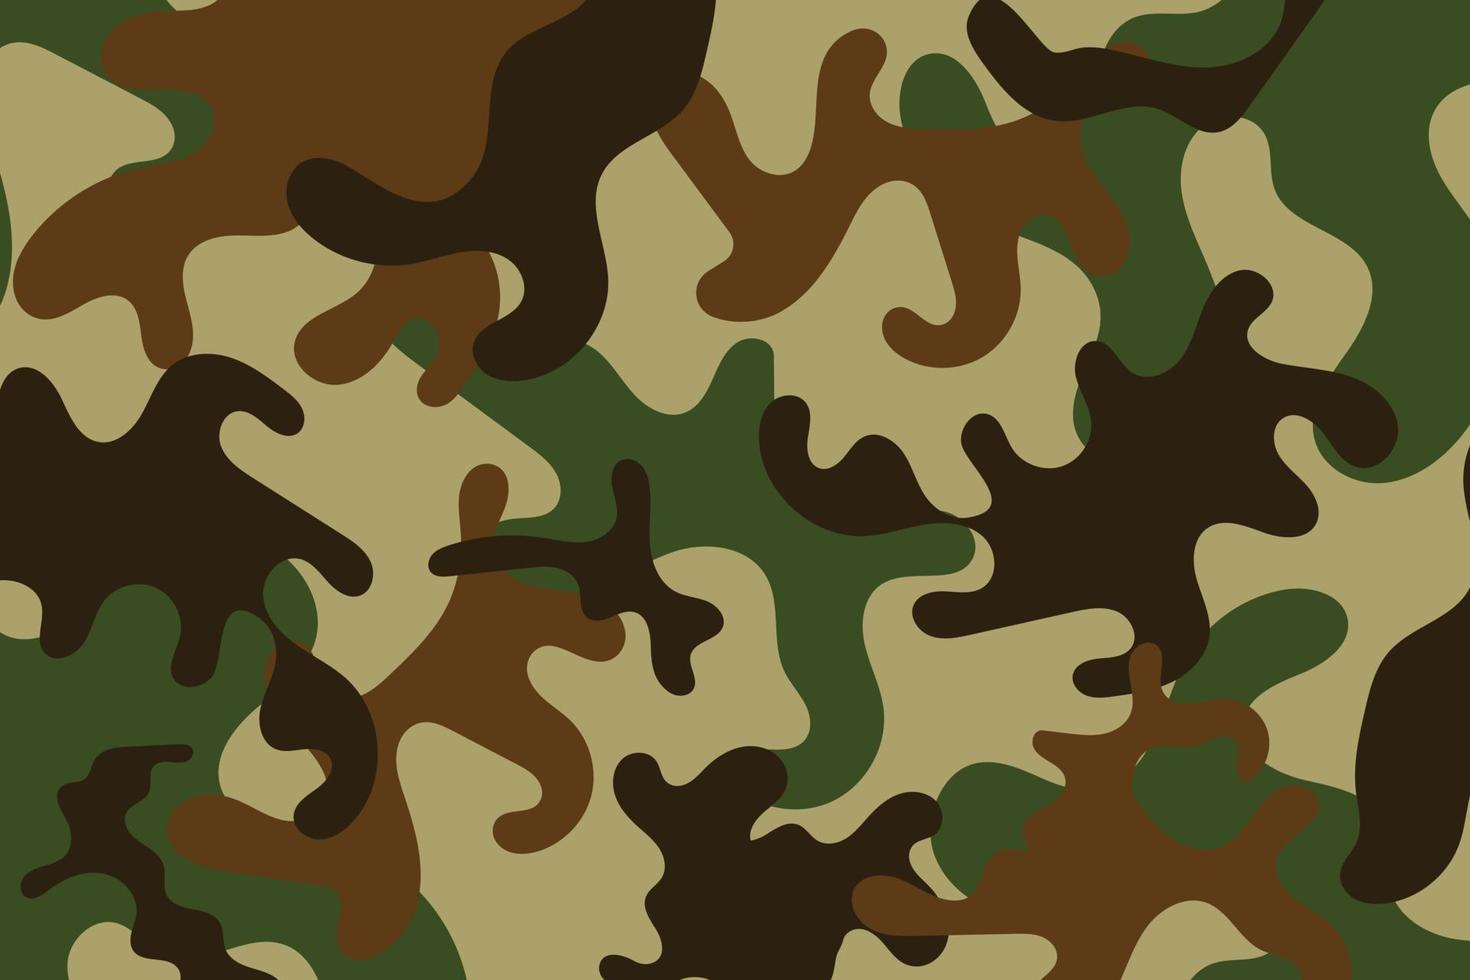 camuflagem soldado padrão design background.clothing estilo exército verde e marrom camo repetir impressão. ilustração vetorial vetor